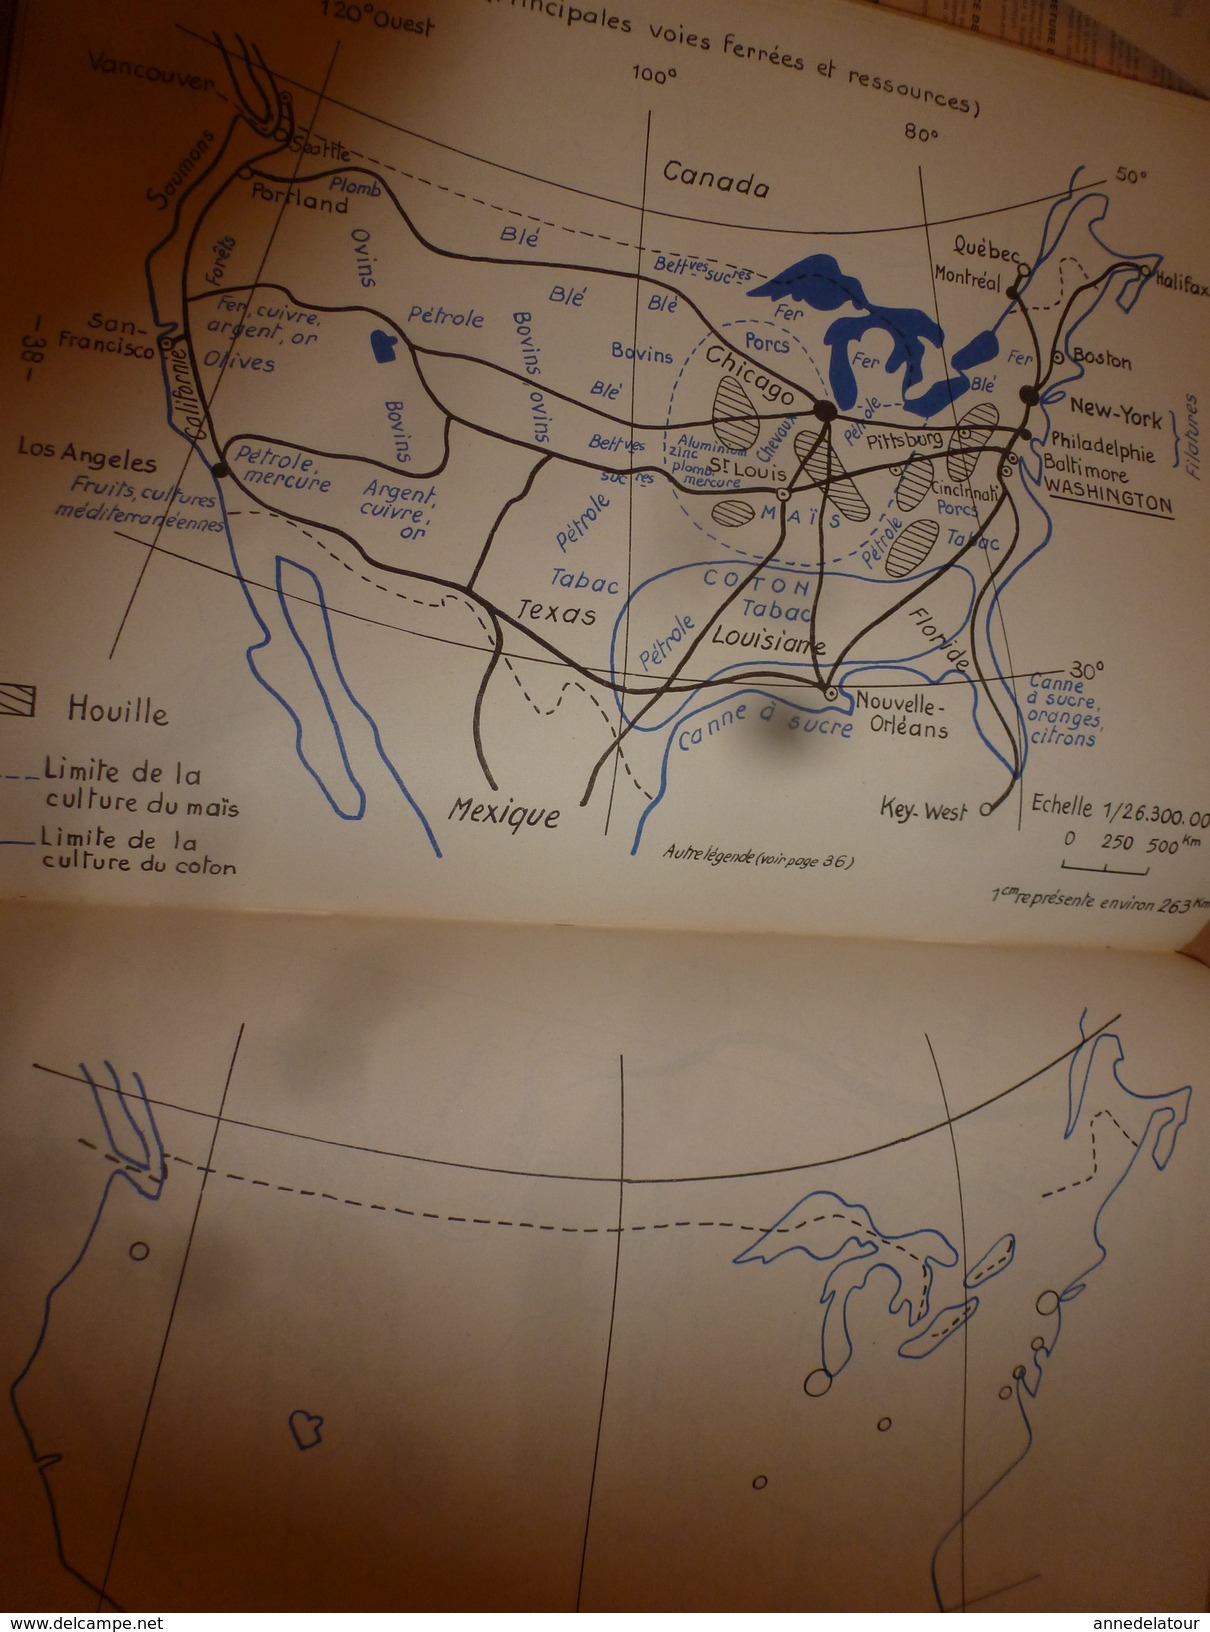 1957 Exercices de Cartographie- Terres et Mers du Globe--Les 5 parties du Globe--Grandes Puissances du Monde